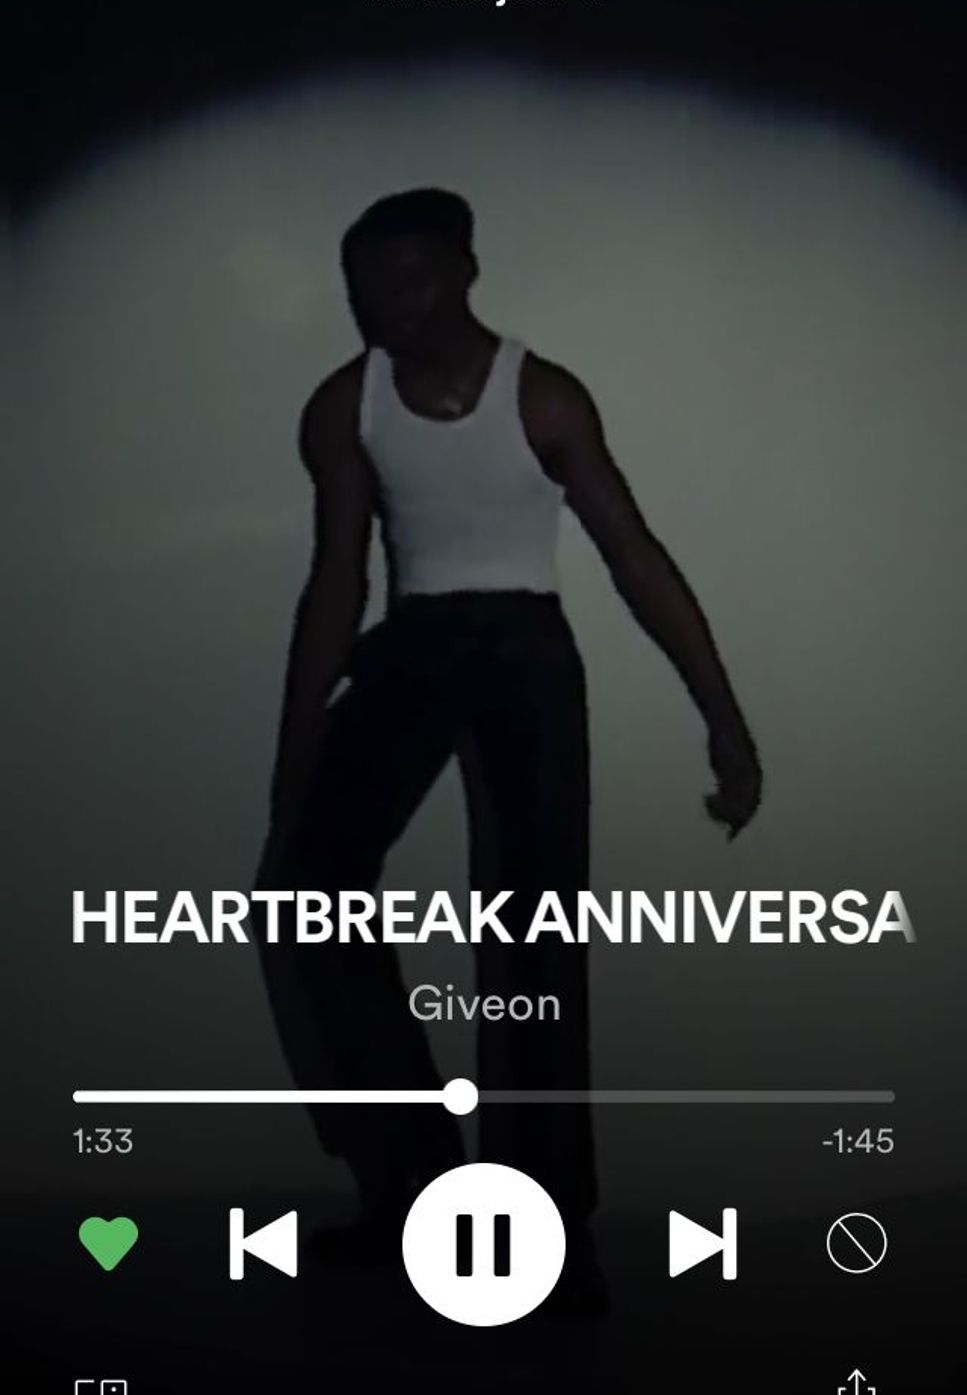 Giveon - HEARTBREAK ANNIVERSARY (lyrics)